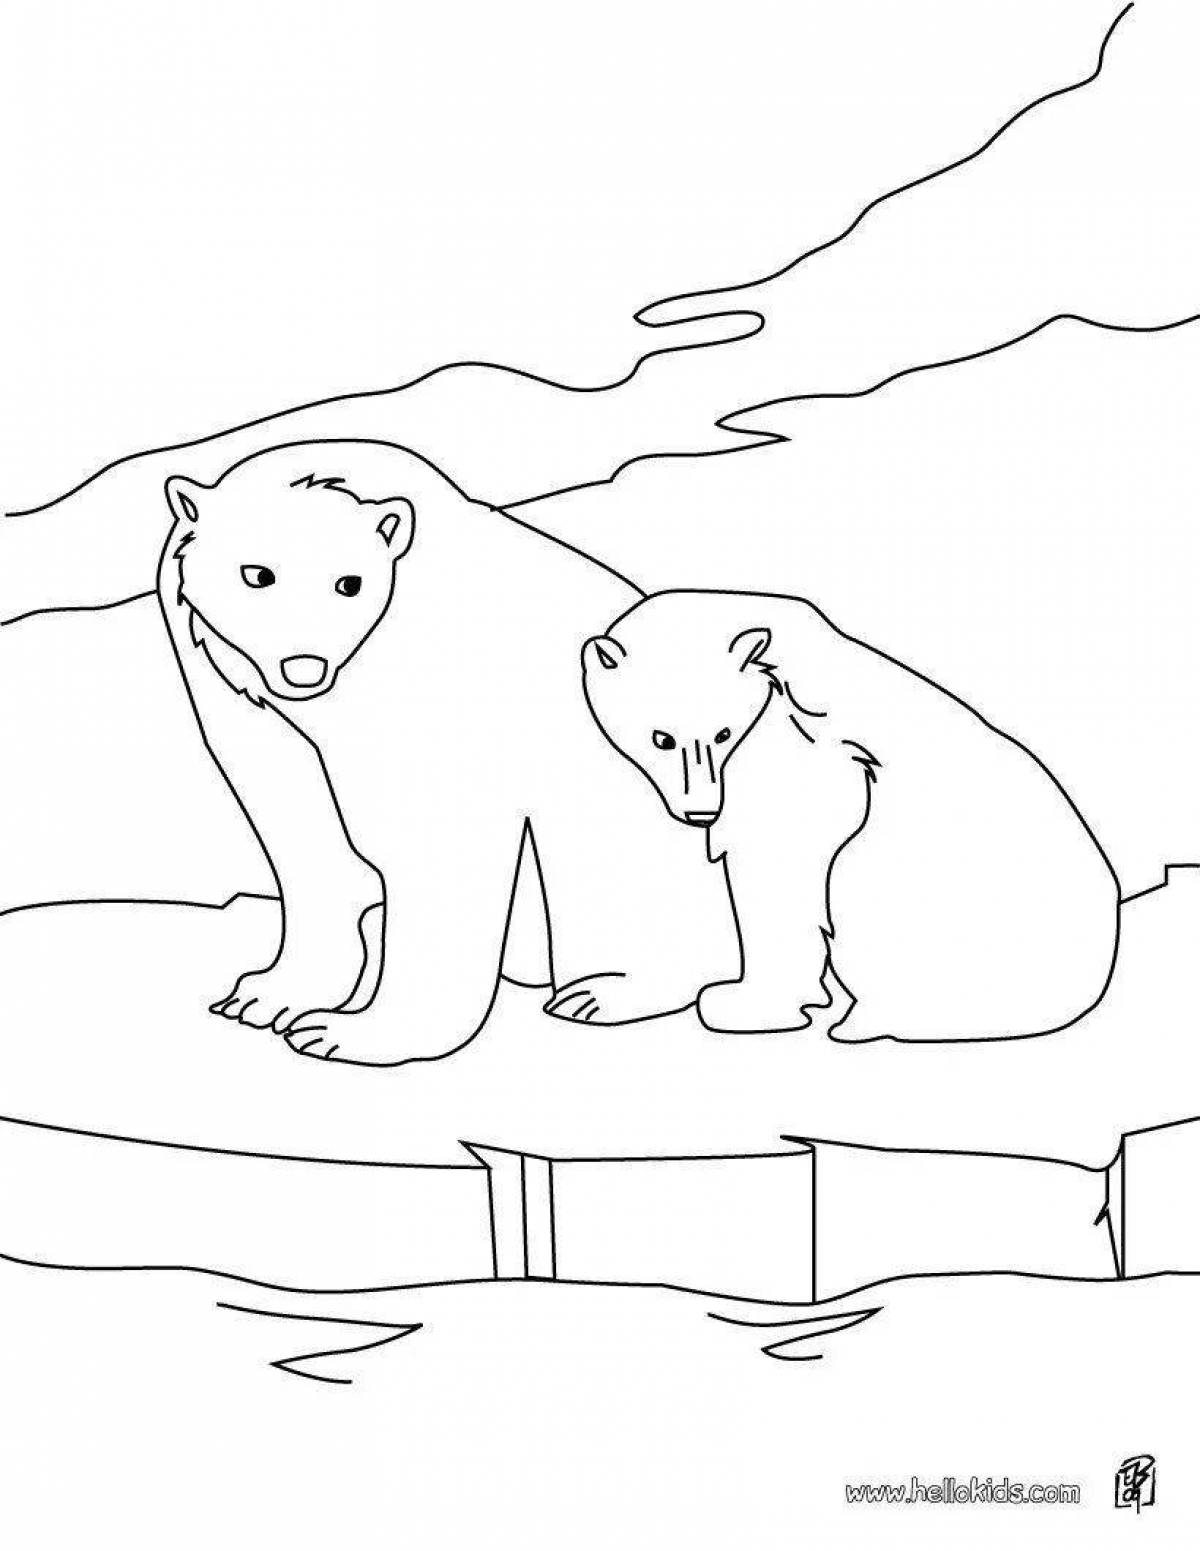 Озорной рисунок белого медведя